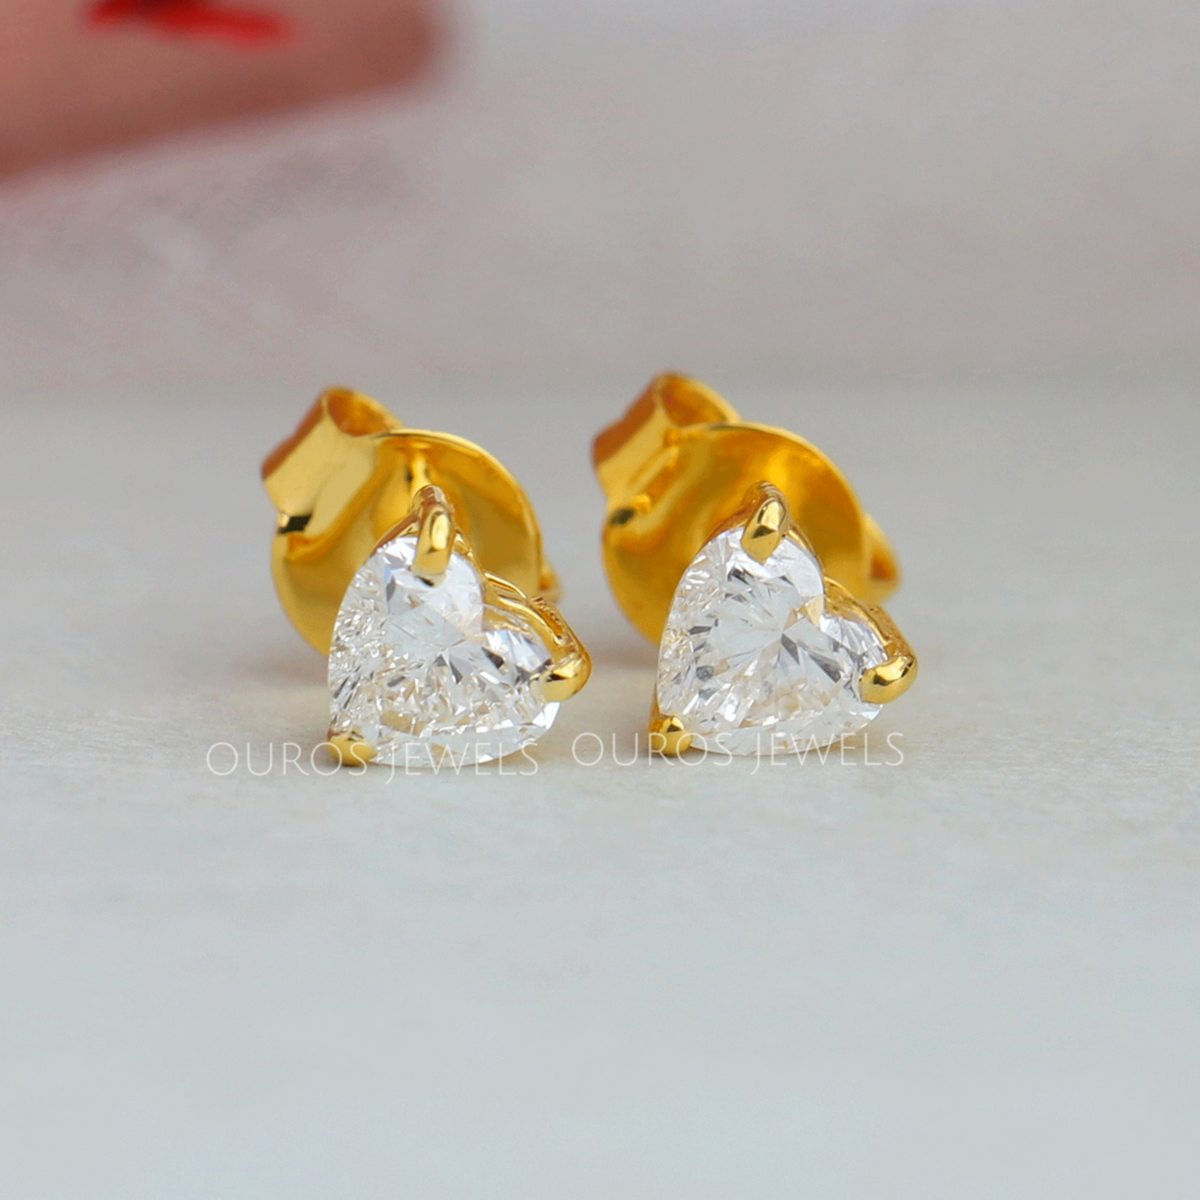 Buy Gold Design White Stone Apple Model 1 Gram Stud Earrings for Kids